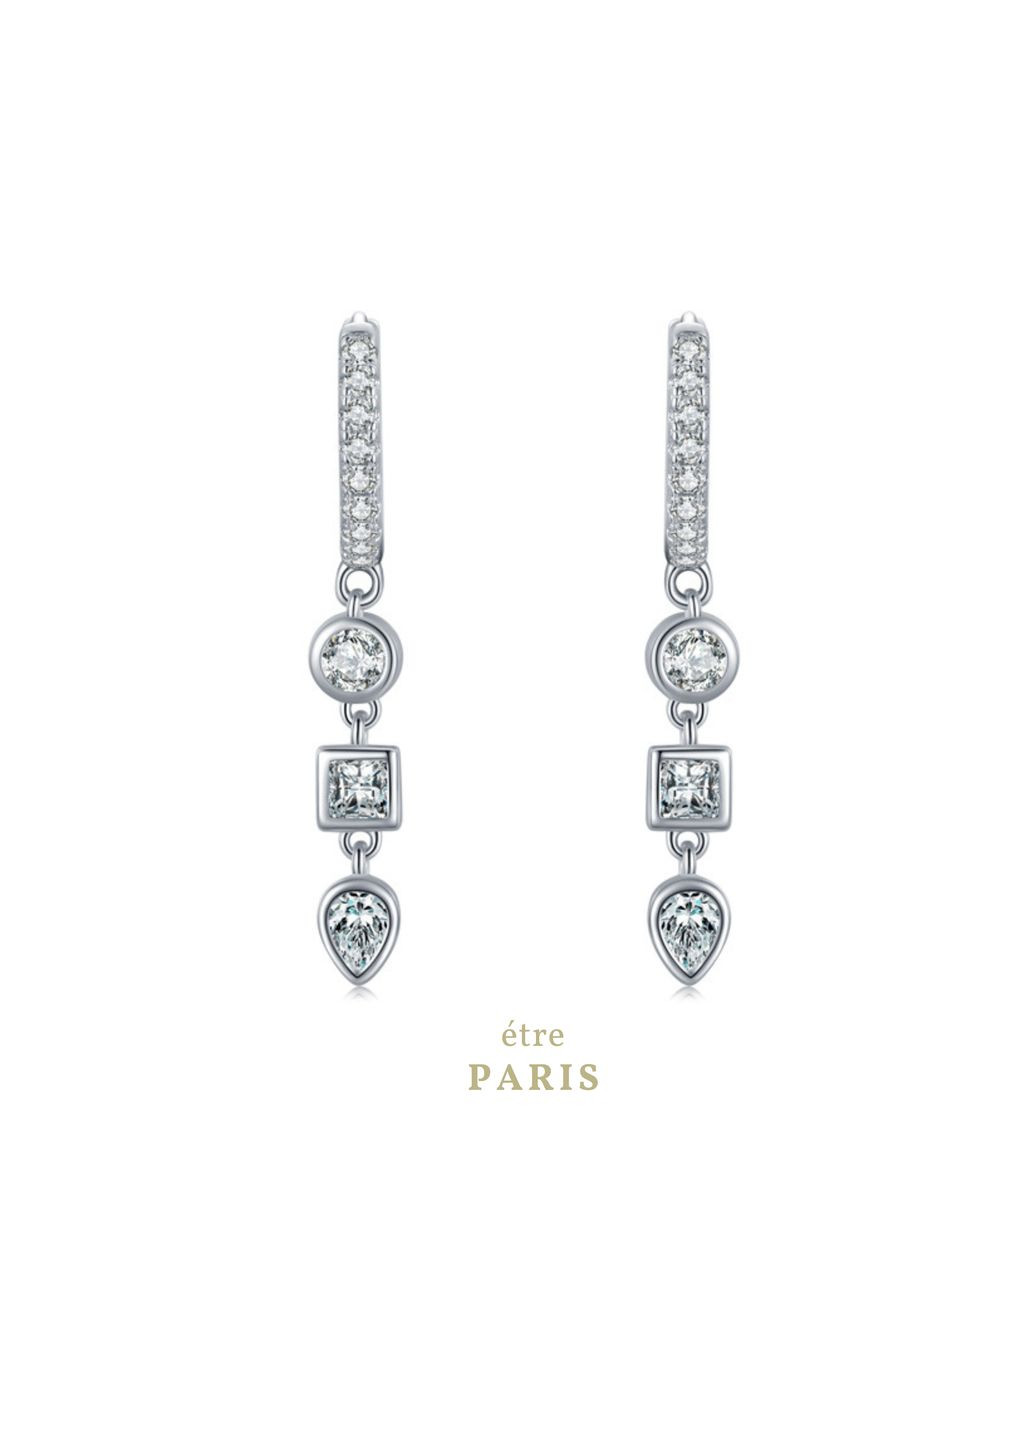 Срібні S925 сережки висячі з камінням білих фіанітів, сережки з висюлькою, довгі срібні сережки, подарунок дівчині CC2 Etre (292401659)